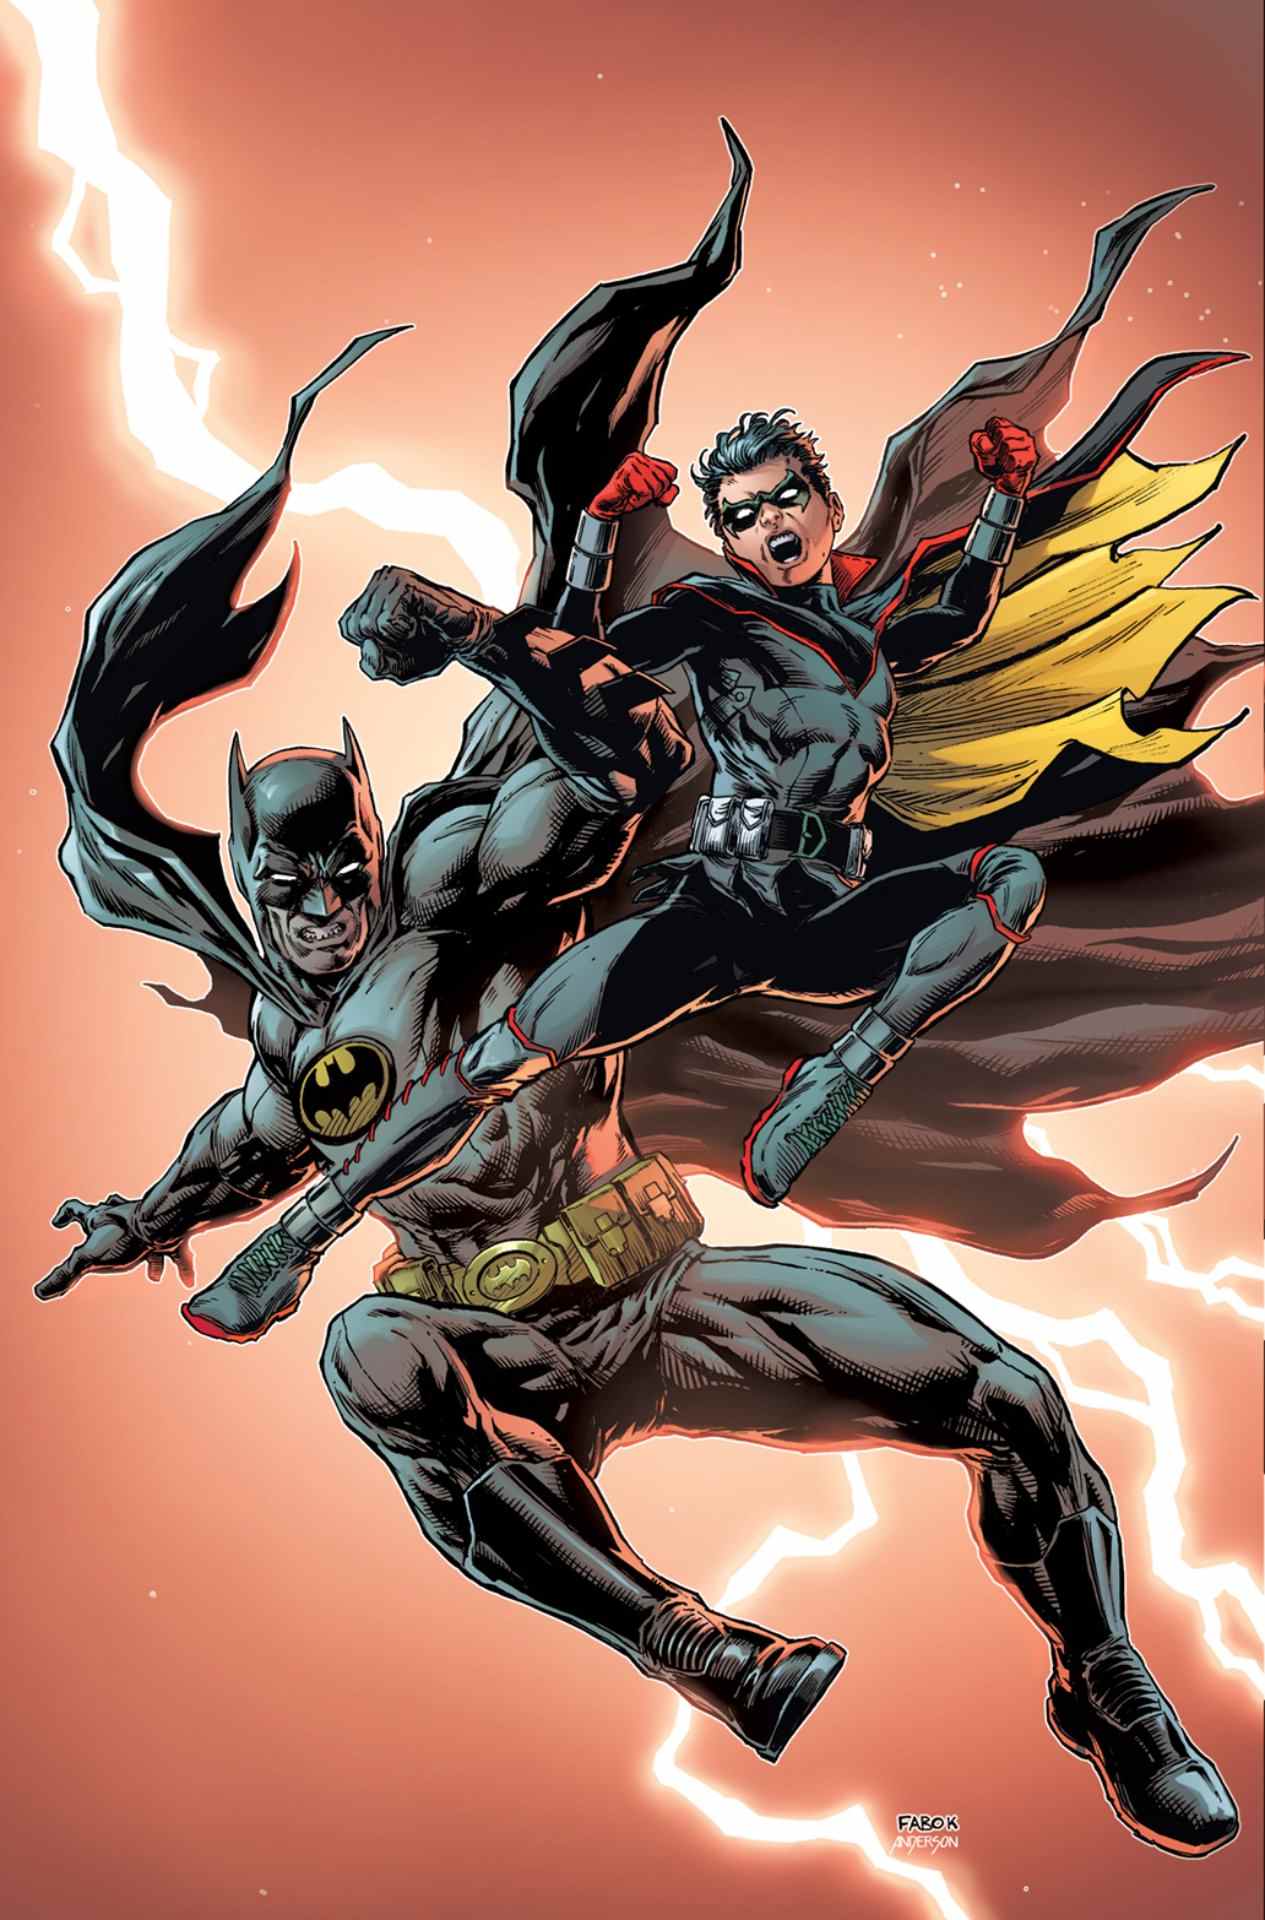 Couverture de la variante Batman vs Robin # 1 par Jason Fabok